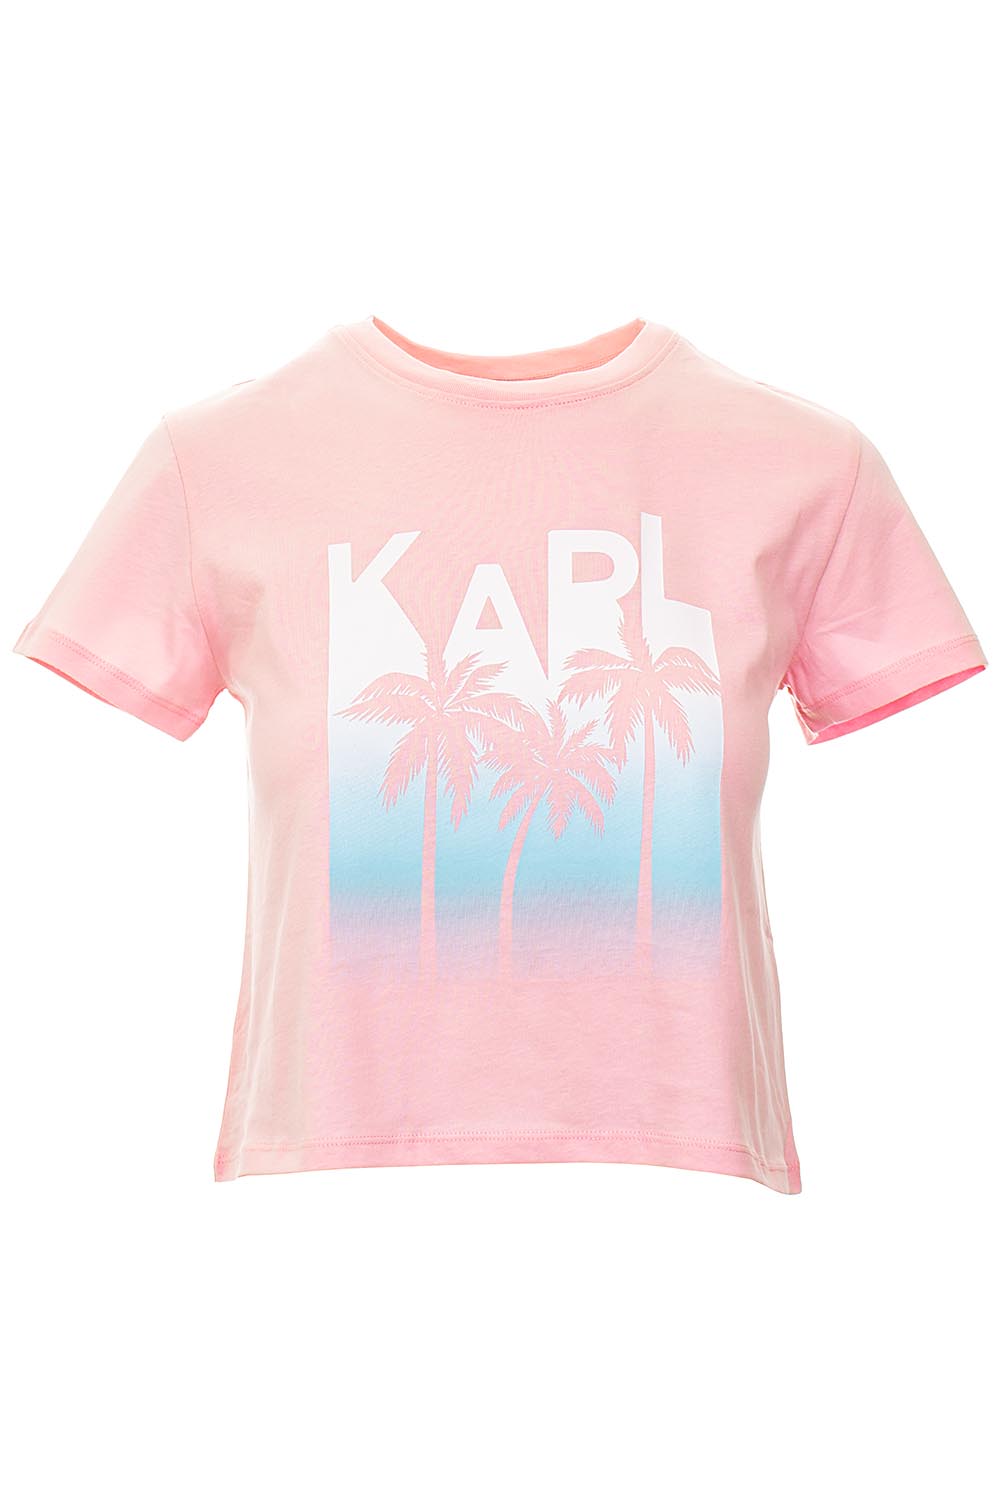 Karl Lagerfeld dámské tričko Crop Top růžové Velikost: S